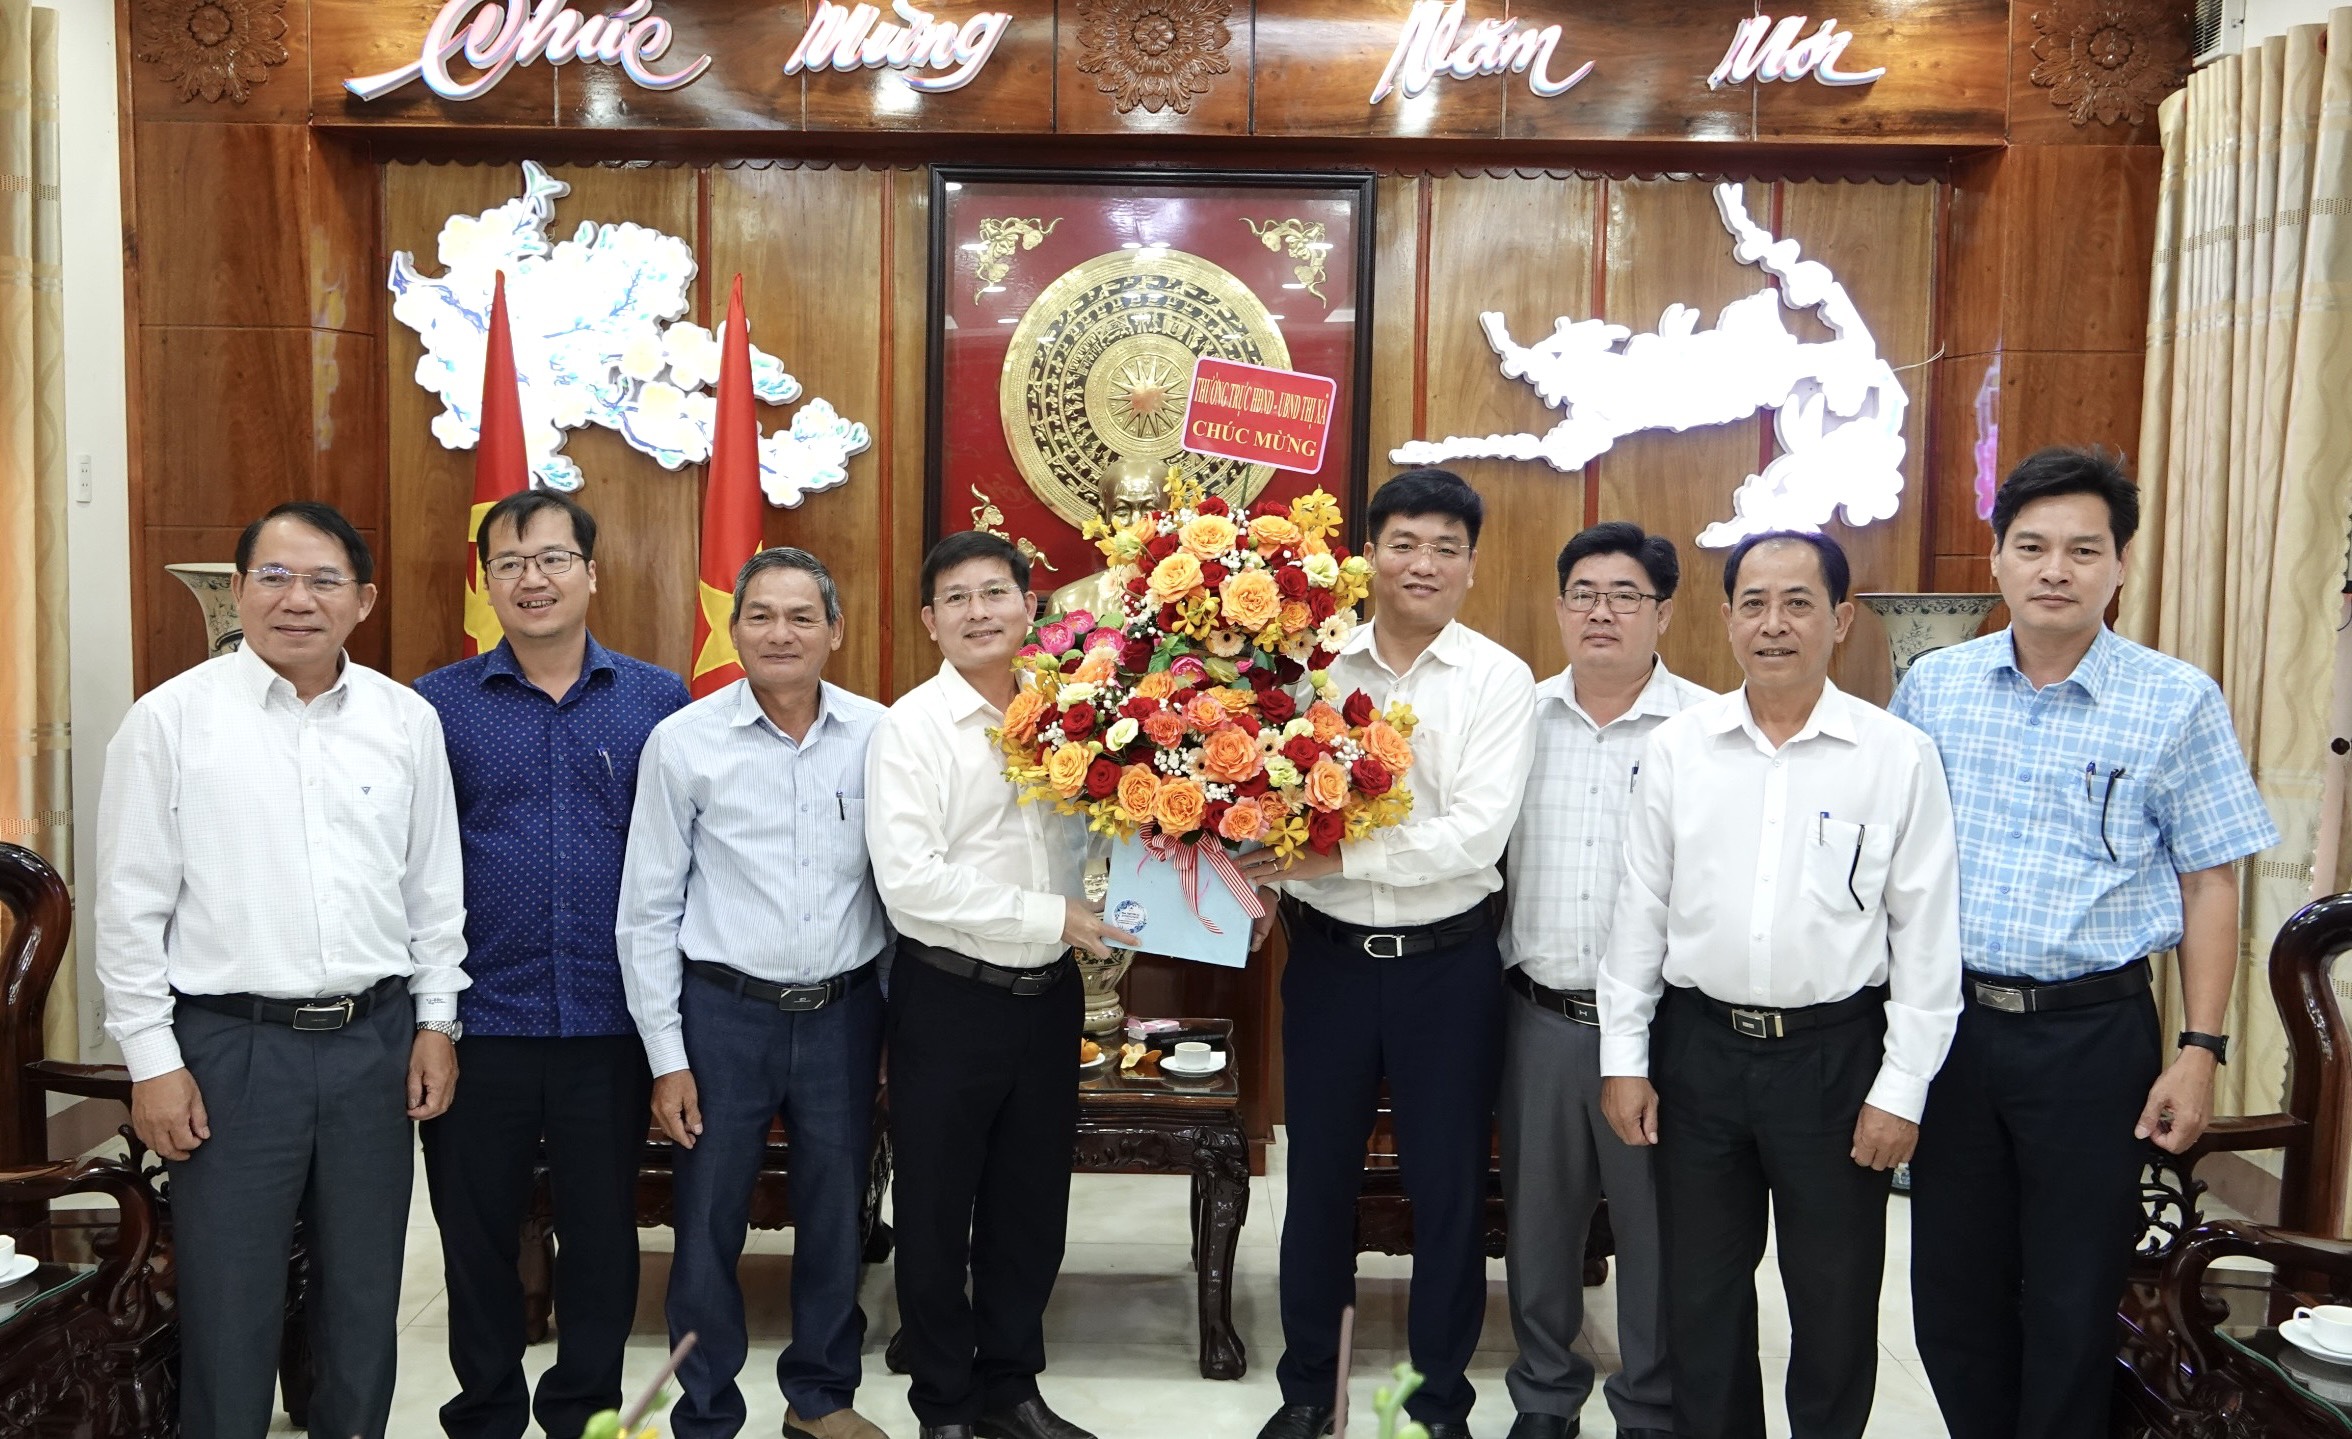 Thăm và chúc mừng Thị ủy nhân kỷ niệm 94 năm Ngày thành lập Đảng Cộng sản Việt Nam (03/02/1930 - 03/02/2024)